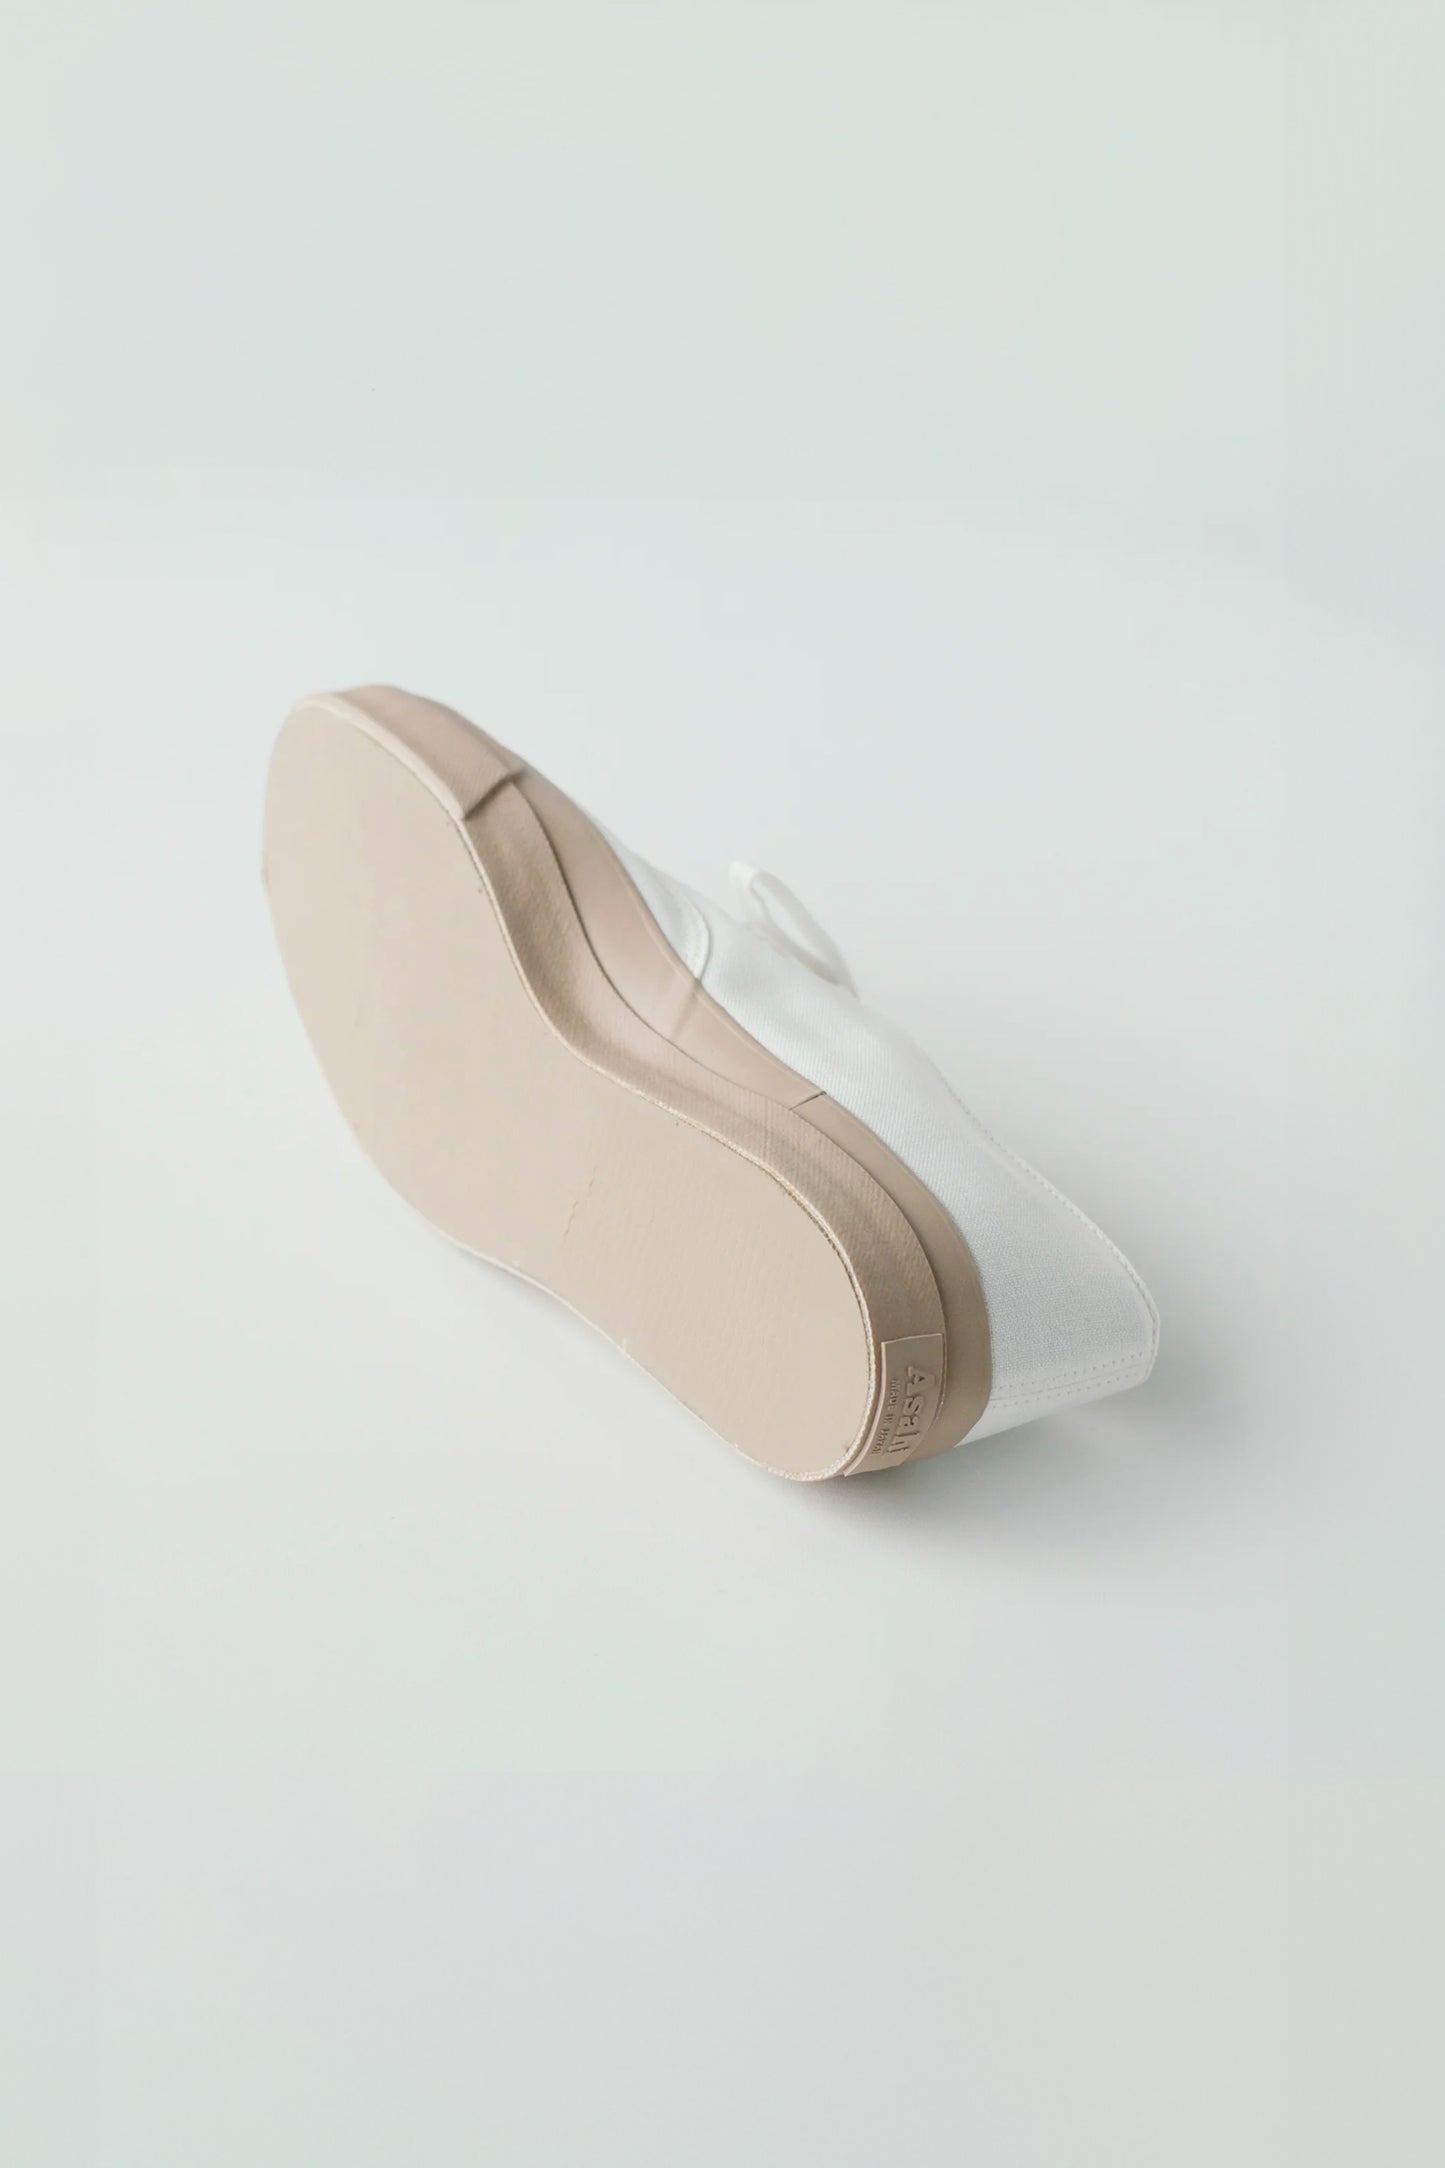 Deck Shoes Canvas - White / Beige